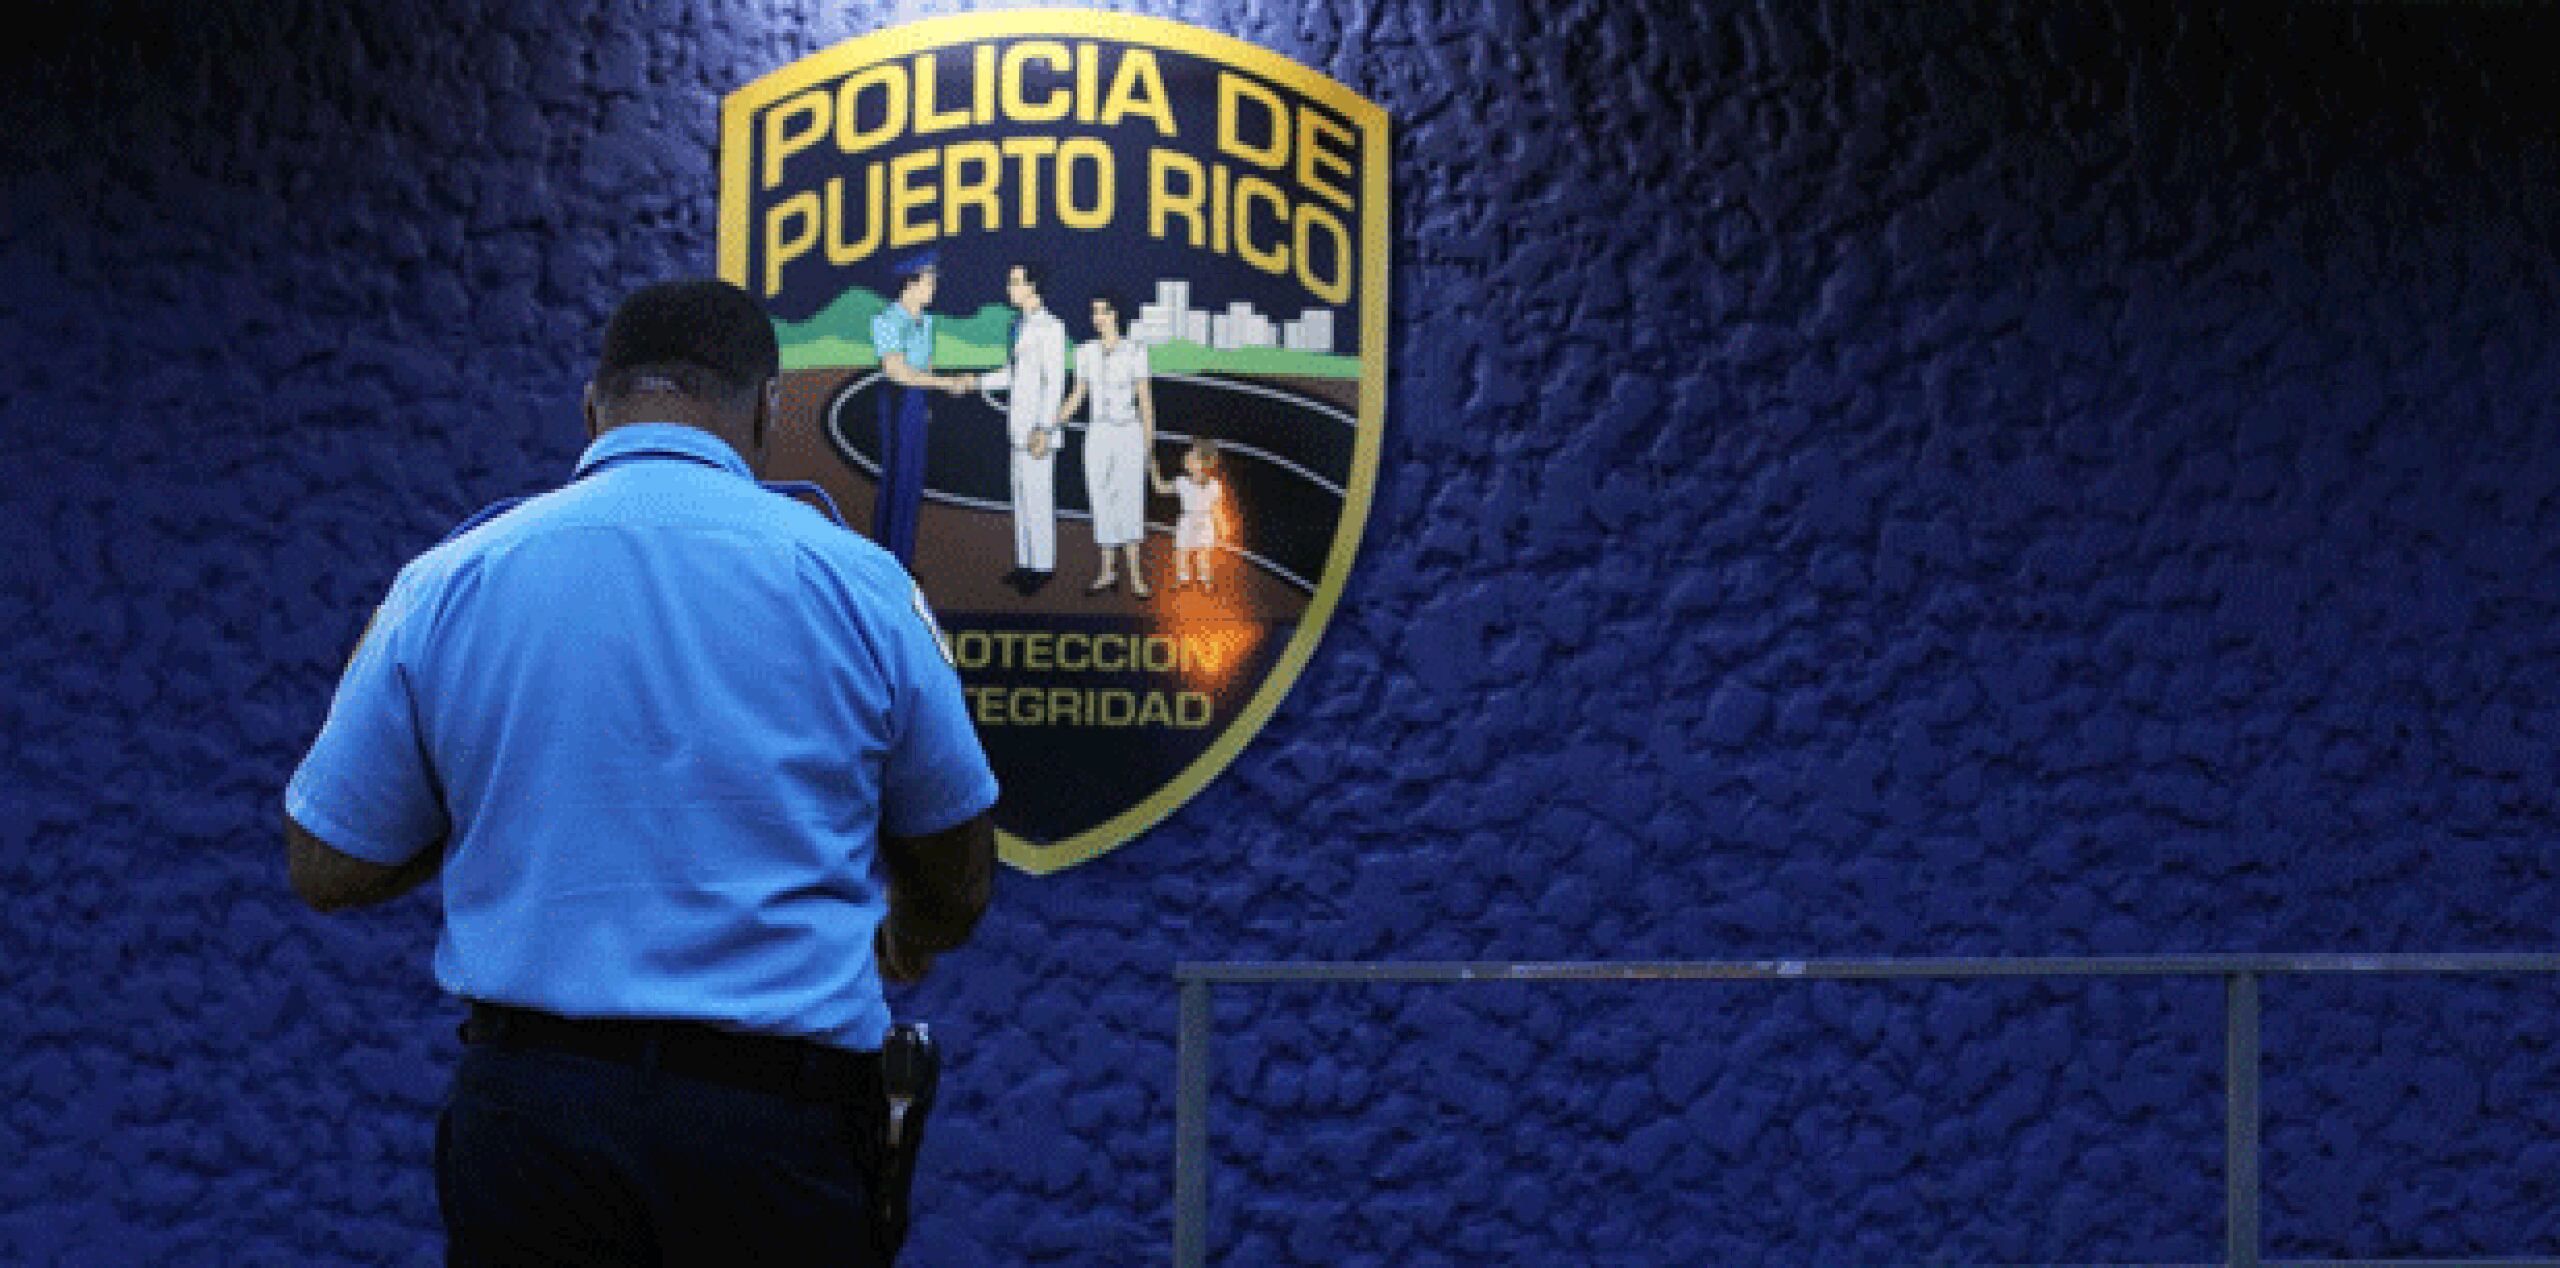 La pesquisa fue referida a la División de Robos del Cuerpo de Investigación Criminal de Ponce.  (Archivo)